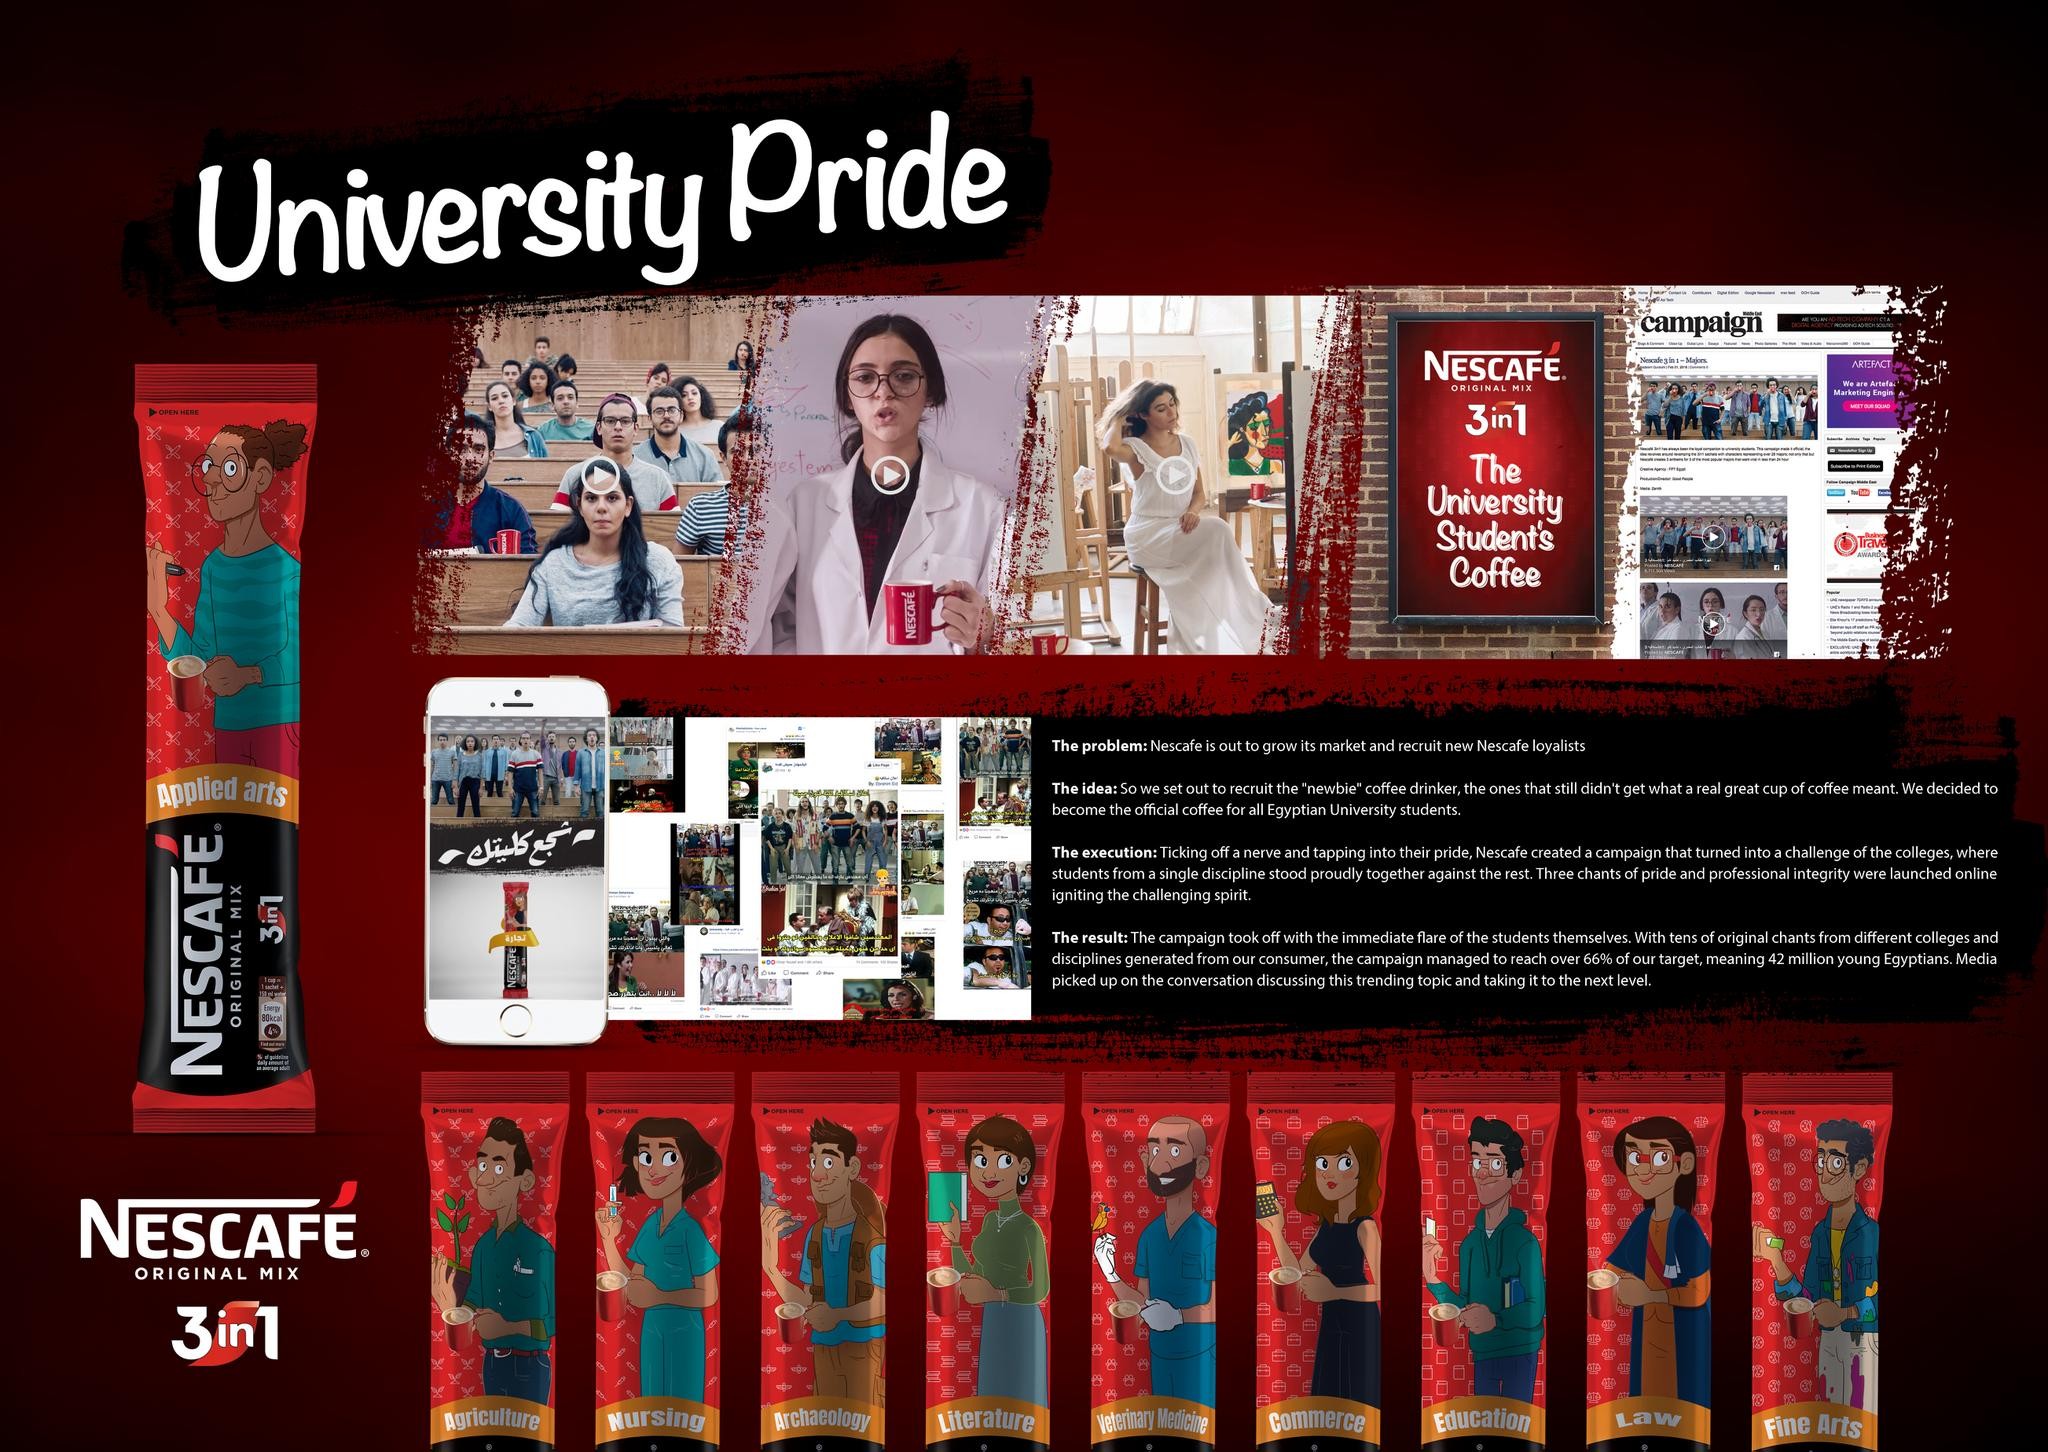 University Pride